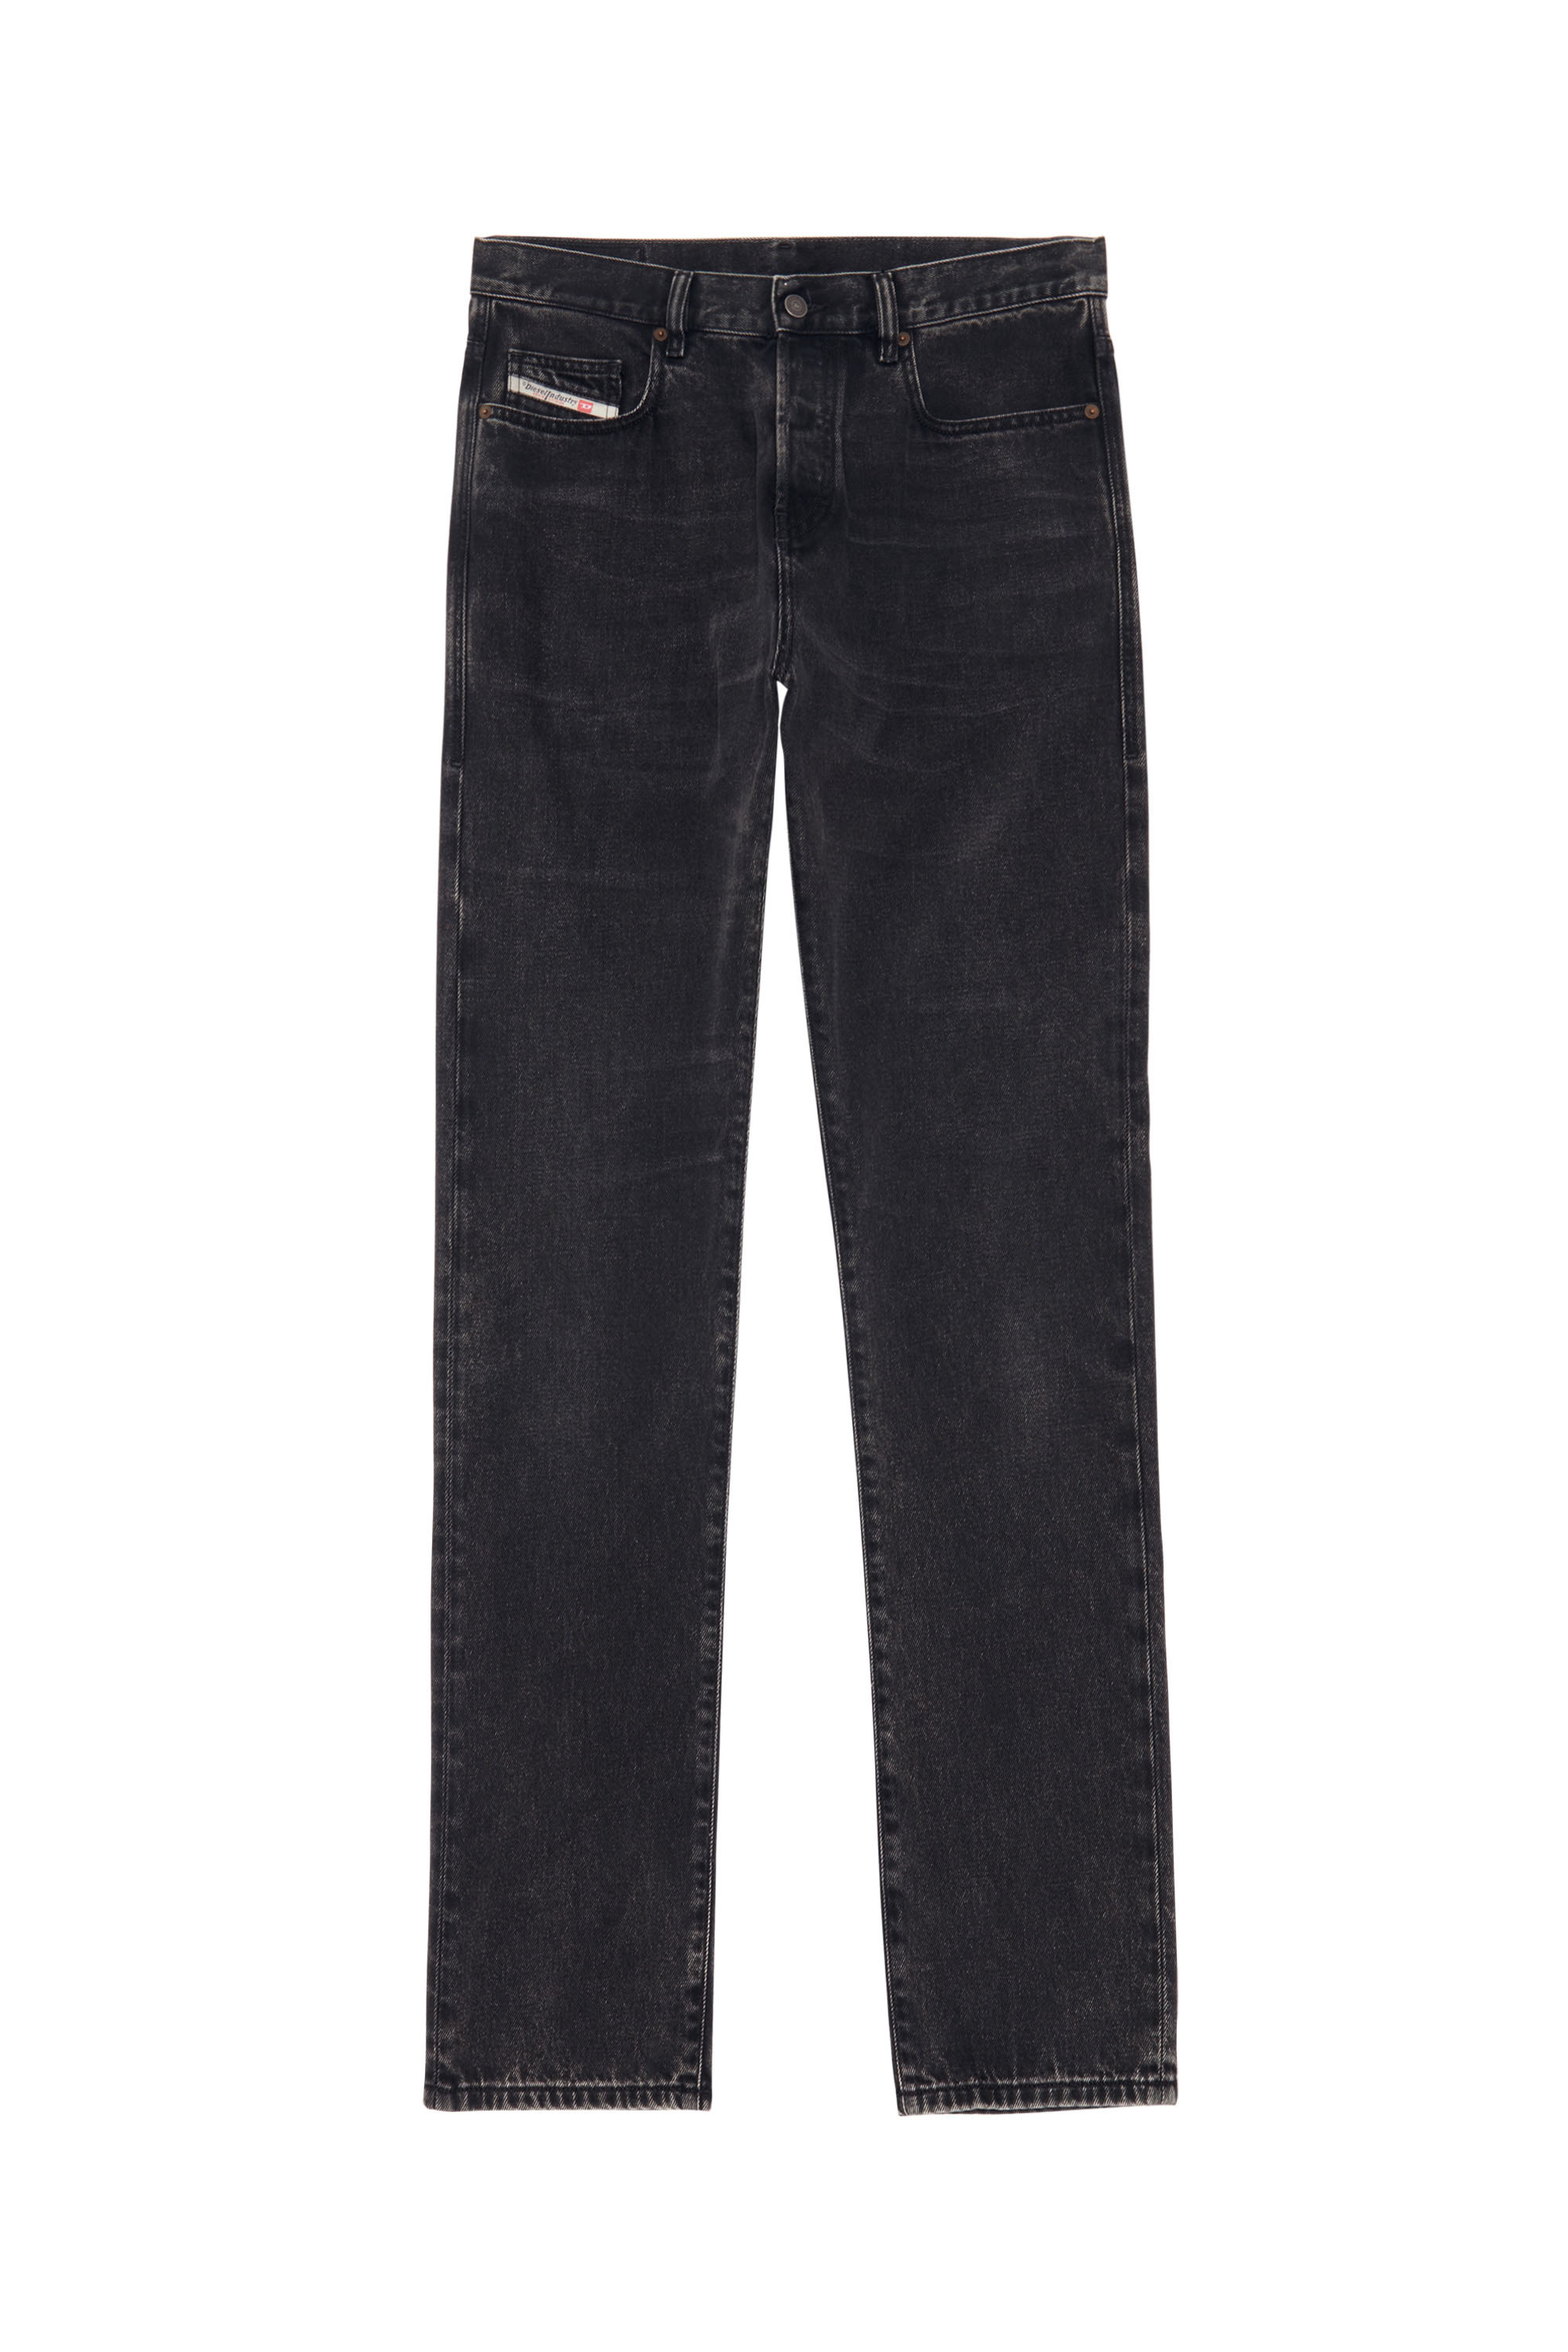 Skinny Jeans 2015 Babhila Z870G, Noir/Gris foncé - Jeans